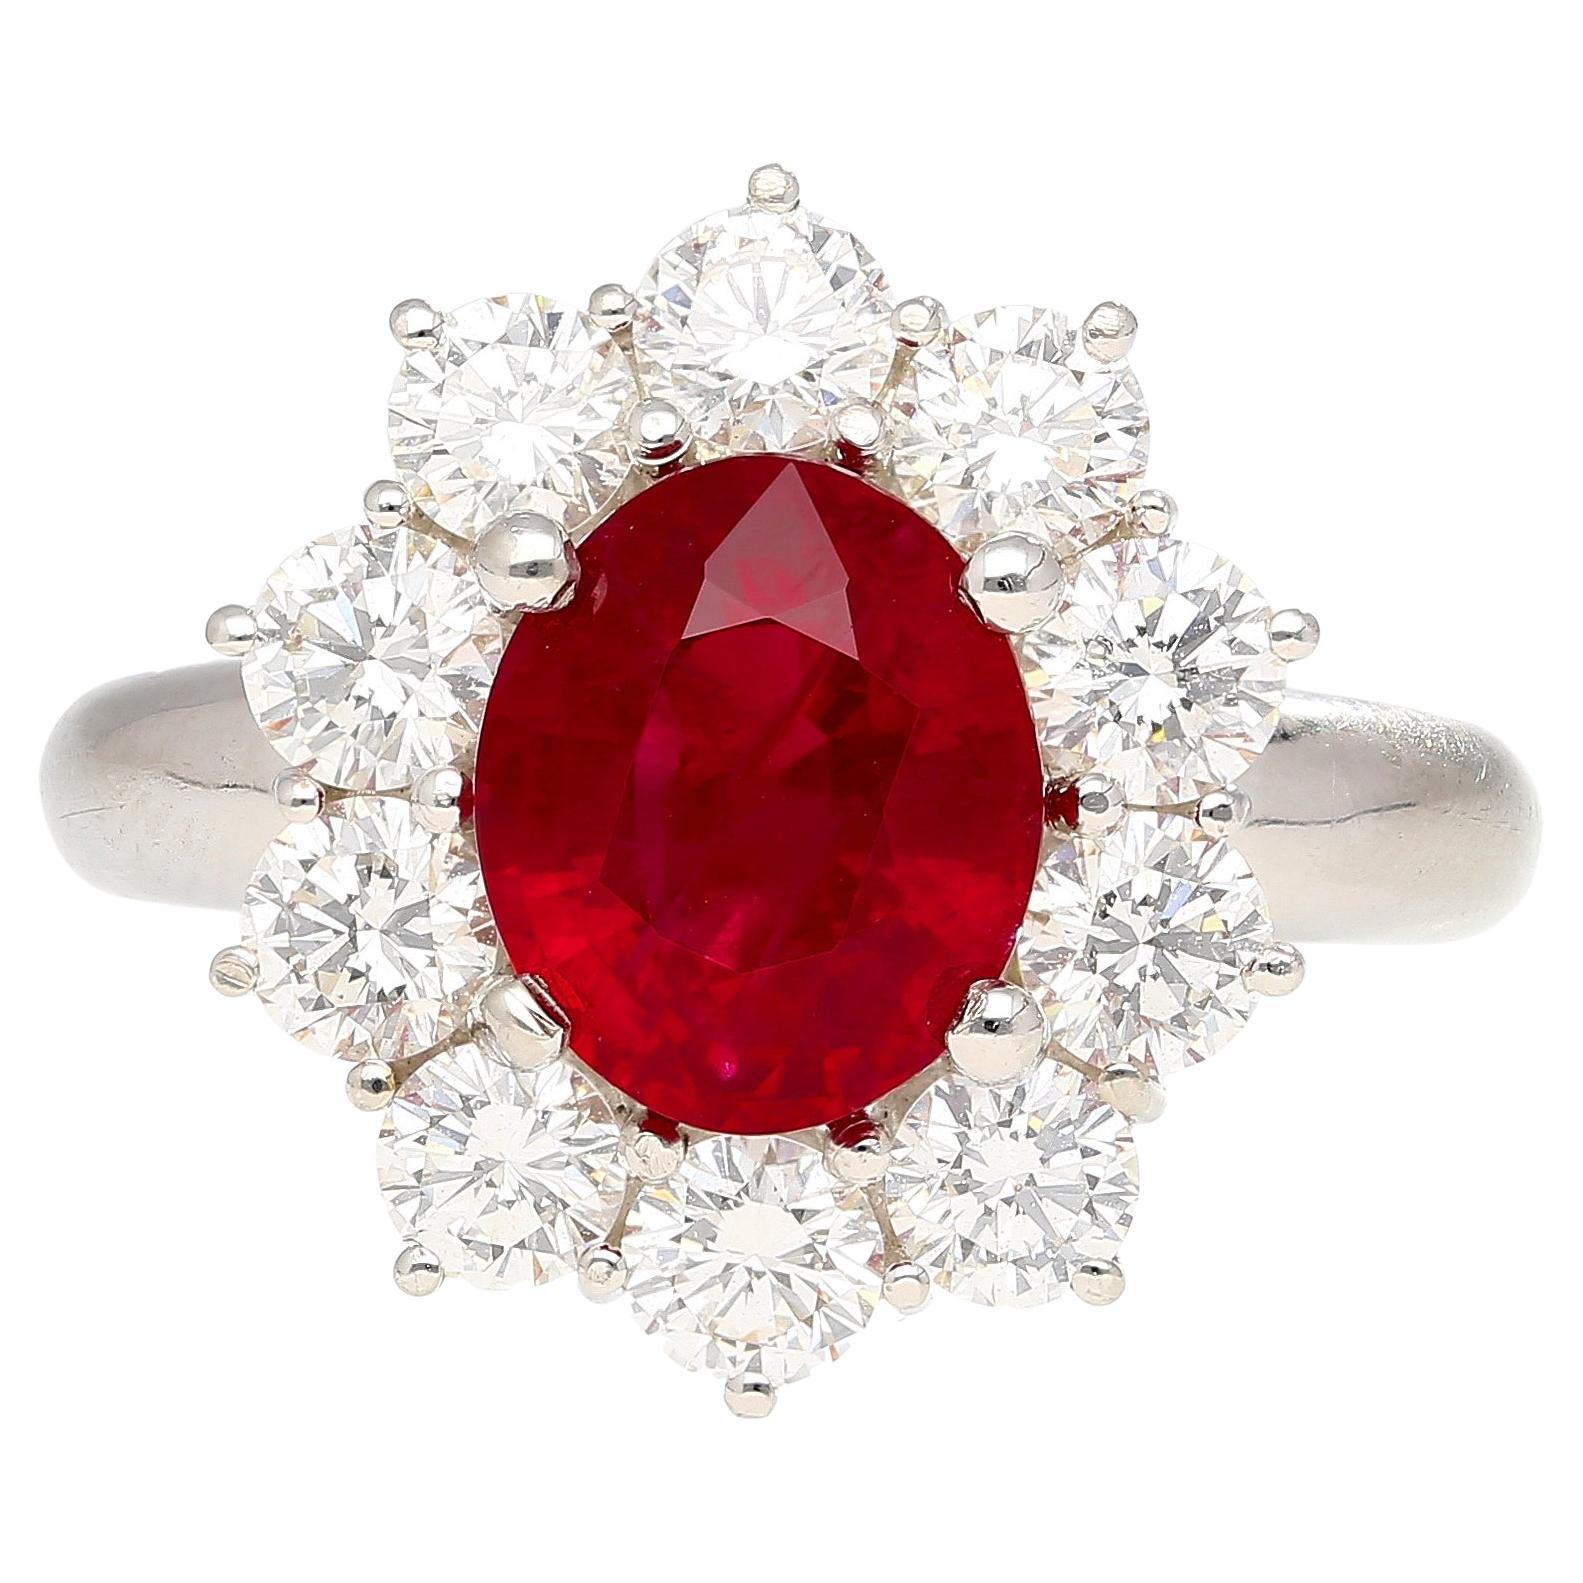 Bague en platine et or de 3 carats en rubis de Birmanie rouge vif avec sang de pigeon et diamants